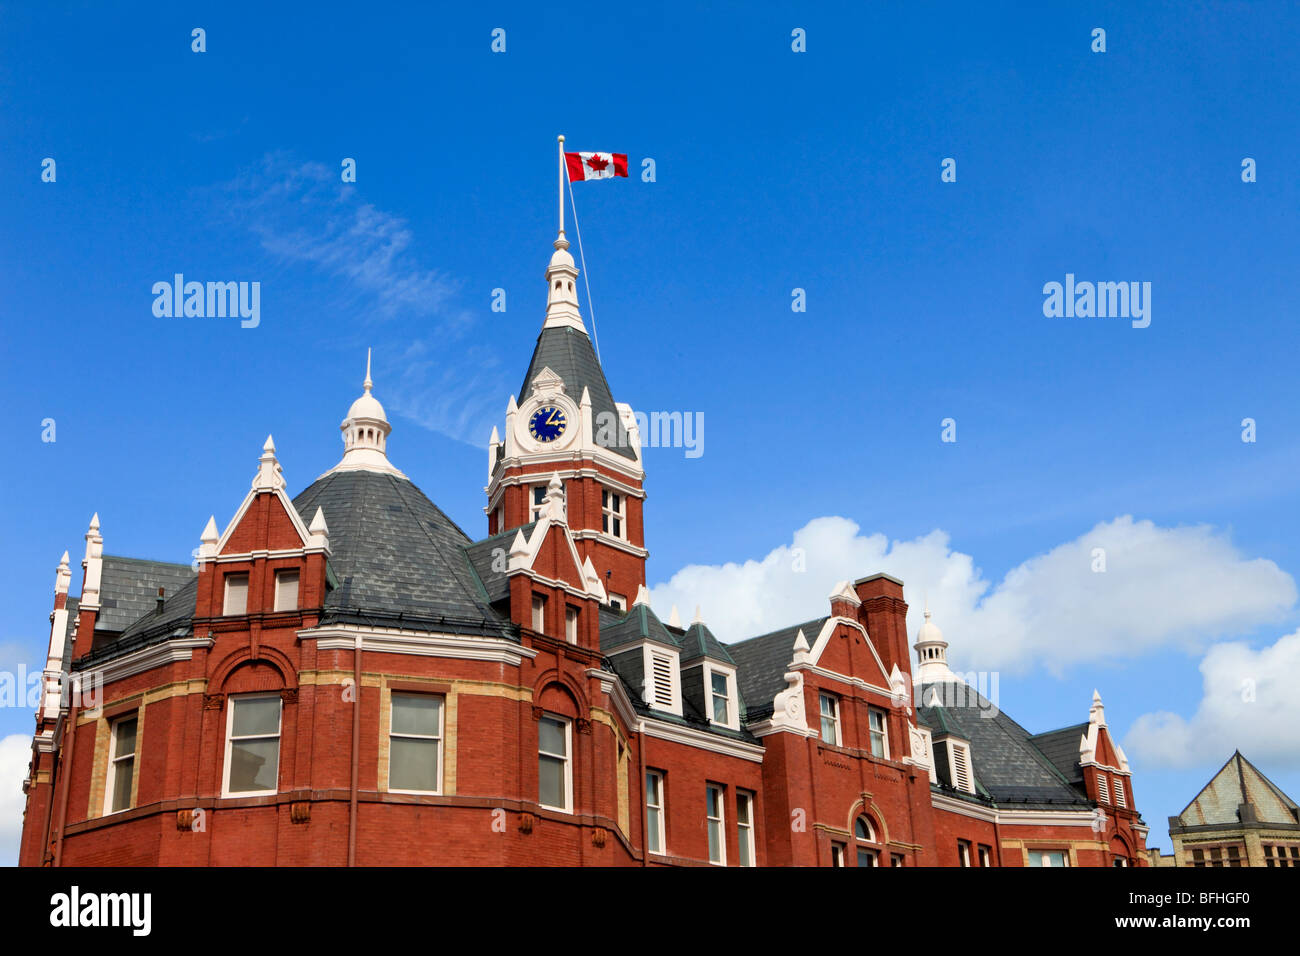 City Hall, Stratford, Ontario, Canada Stock Photo